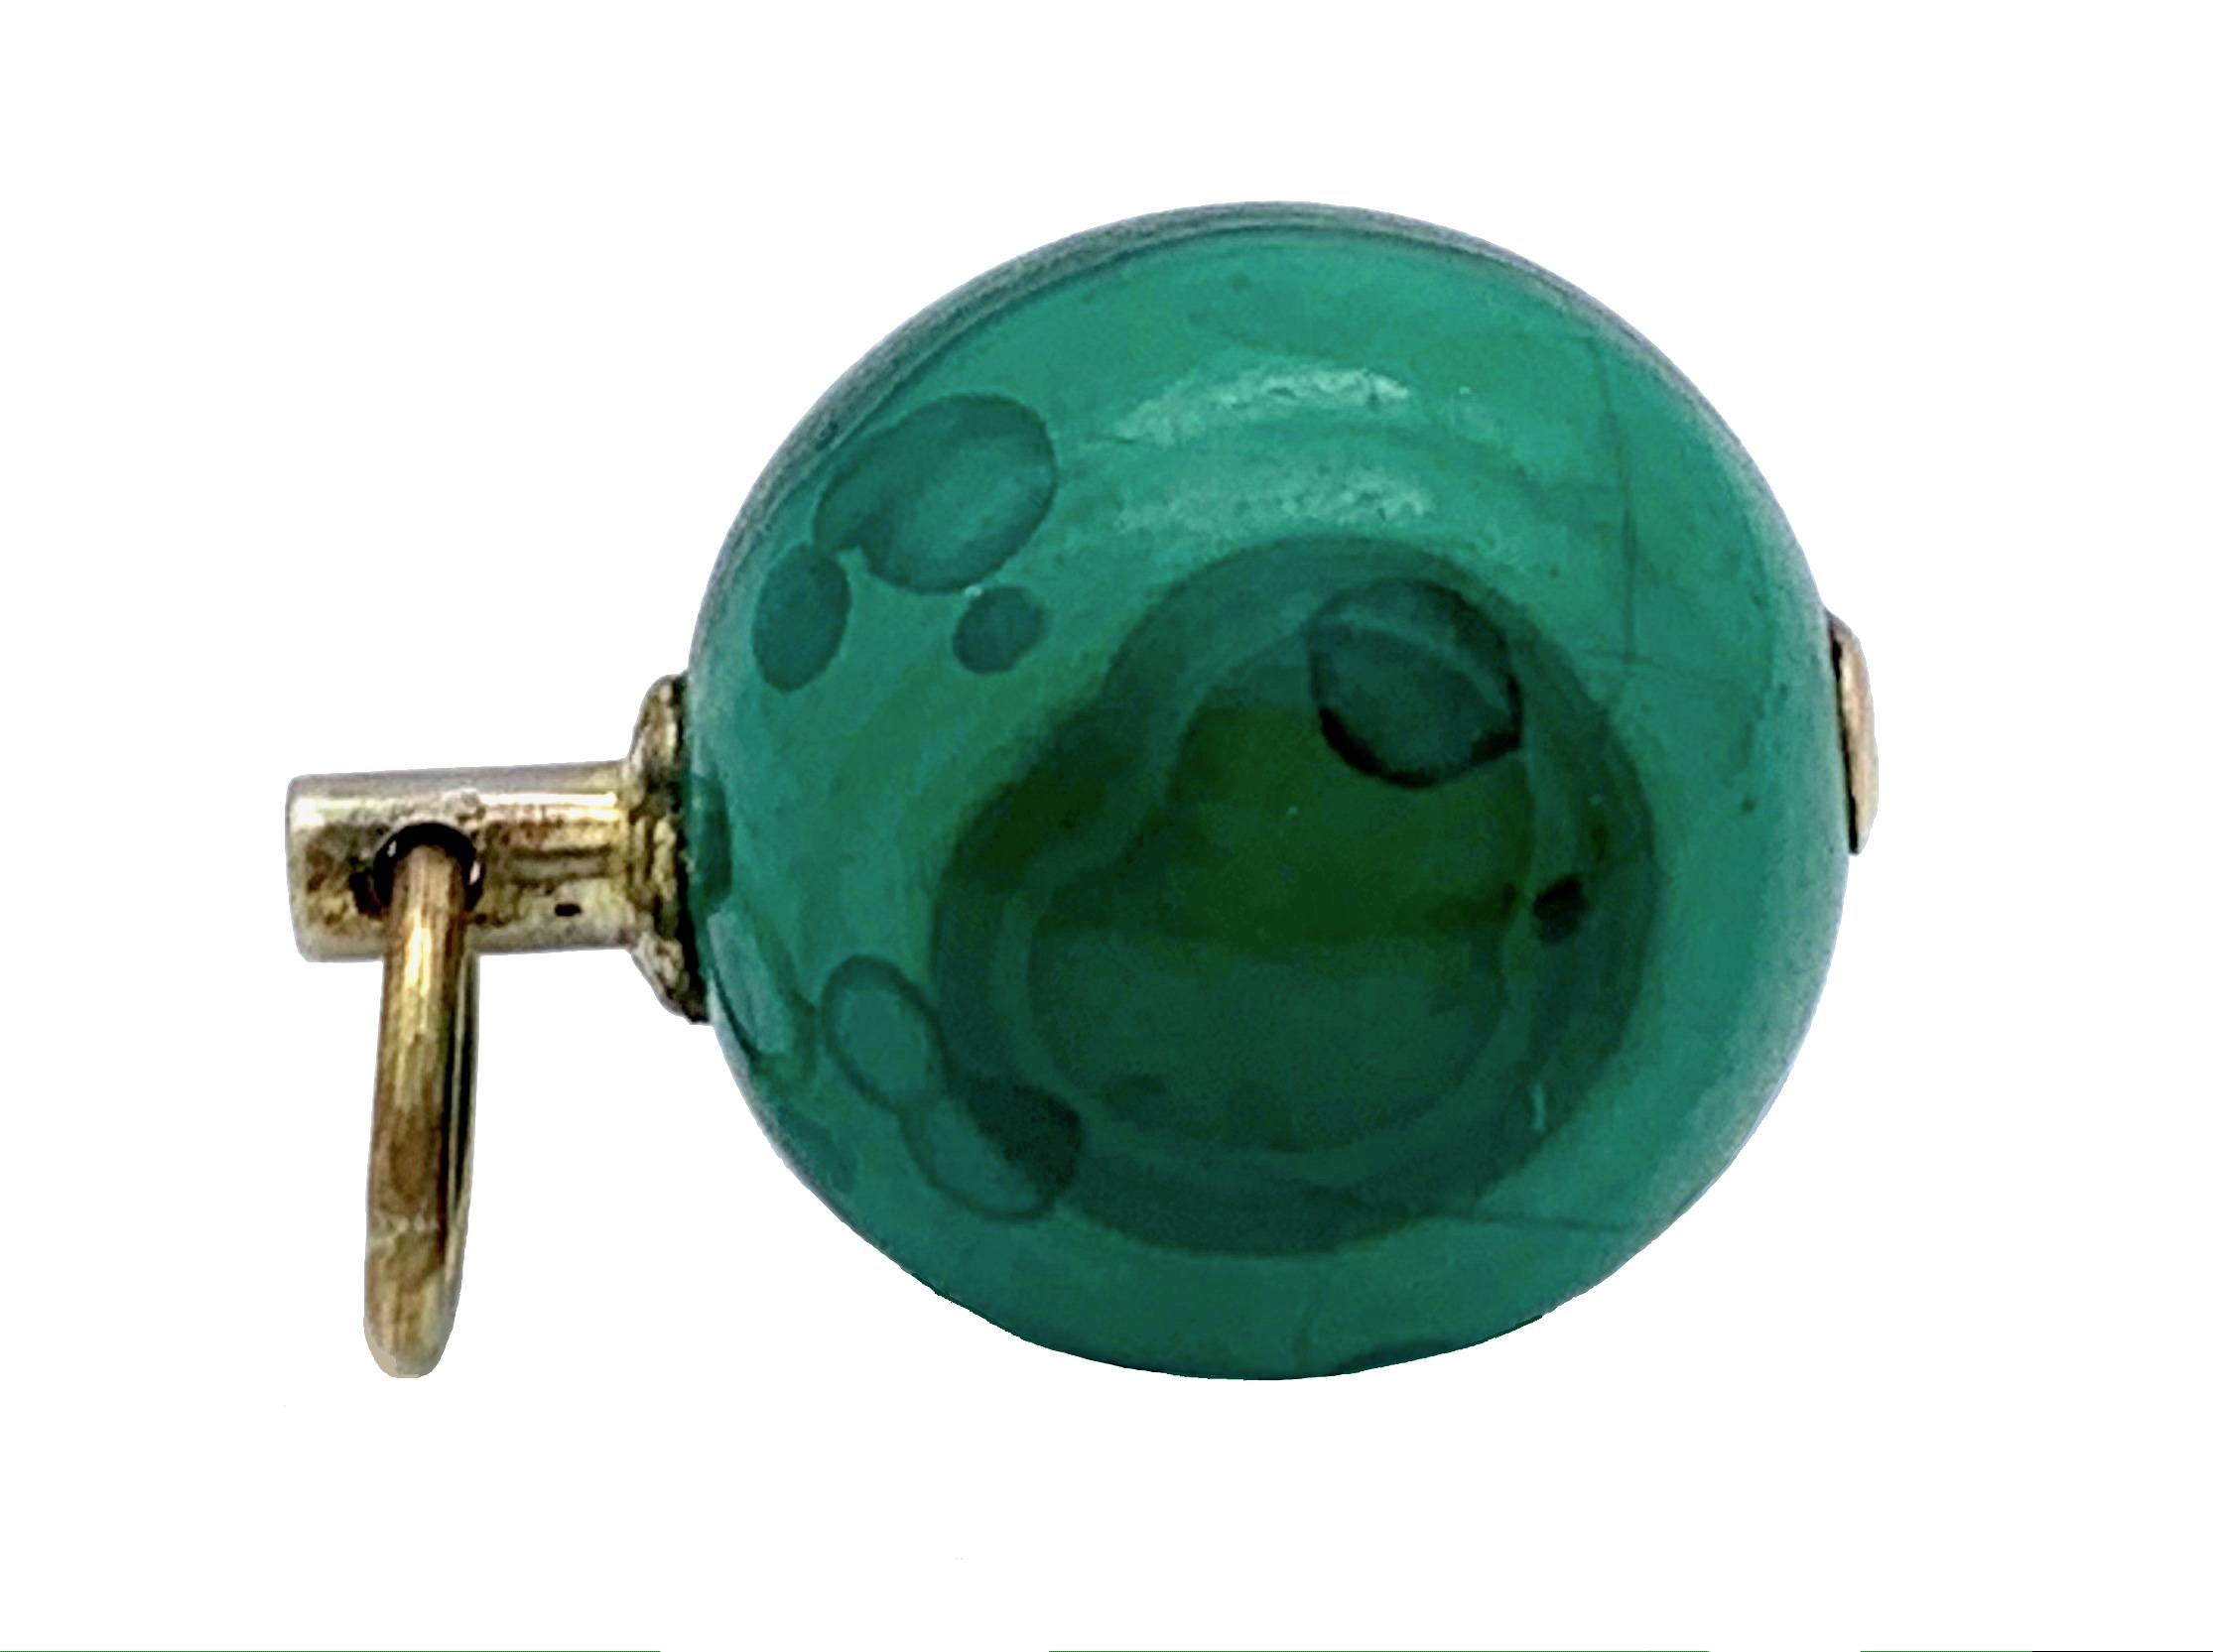 Cette magnifique clé de montre en forme de boule de malachite d'un vert intense a été fabriquée en Angleterre dans le deuxième quart du XIXe siècle. Il s'agissait autrefois d'un accessoire à la mode sur la chaîne de montre d'un gentleman